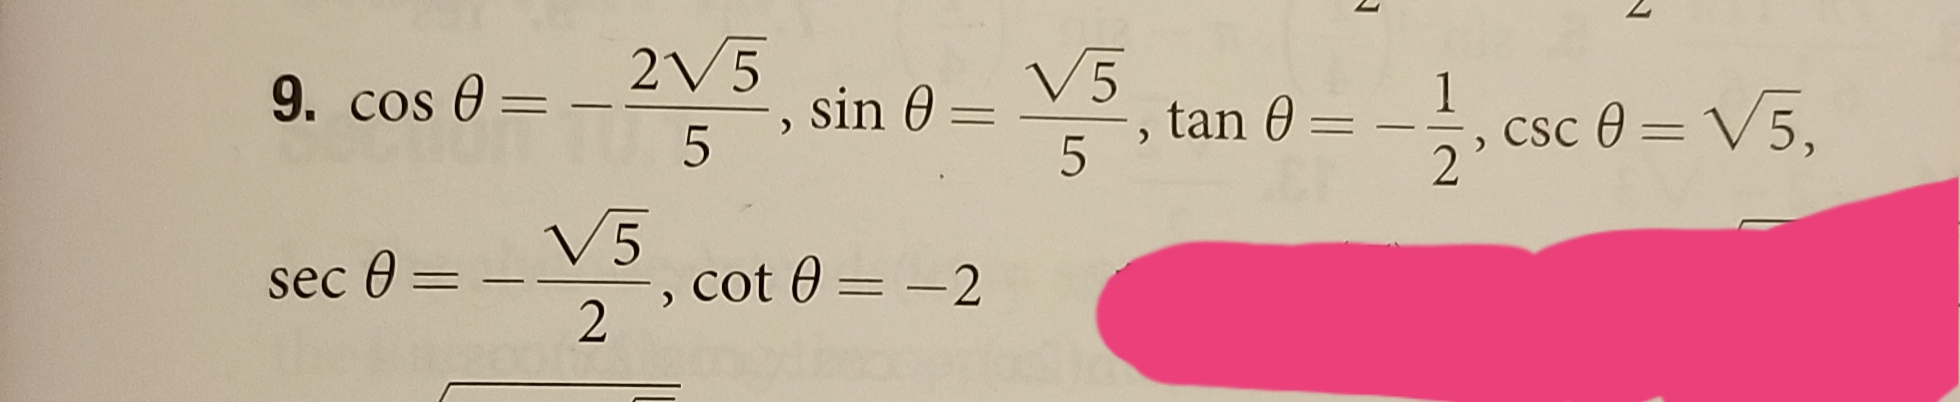 2V5
V5
sin 0 =
,tan 0 = -, csc 0 = V5,
9. cos 0 =
5
2'
V5
sec 0 =
cot 0 = -2
